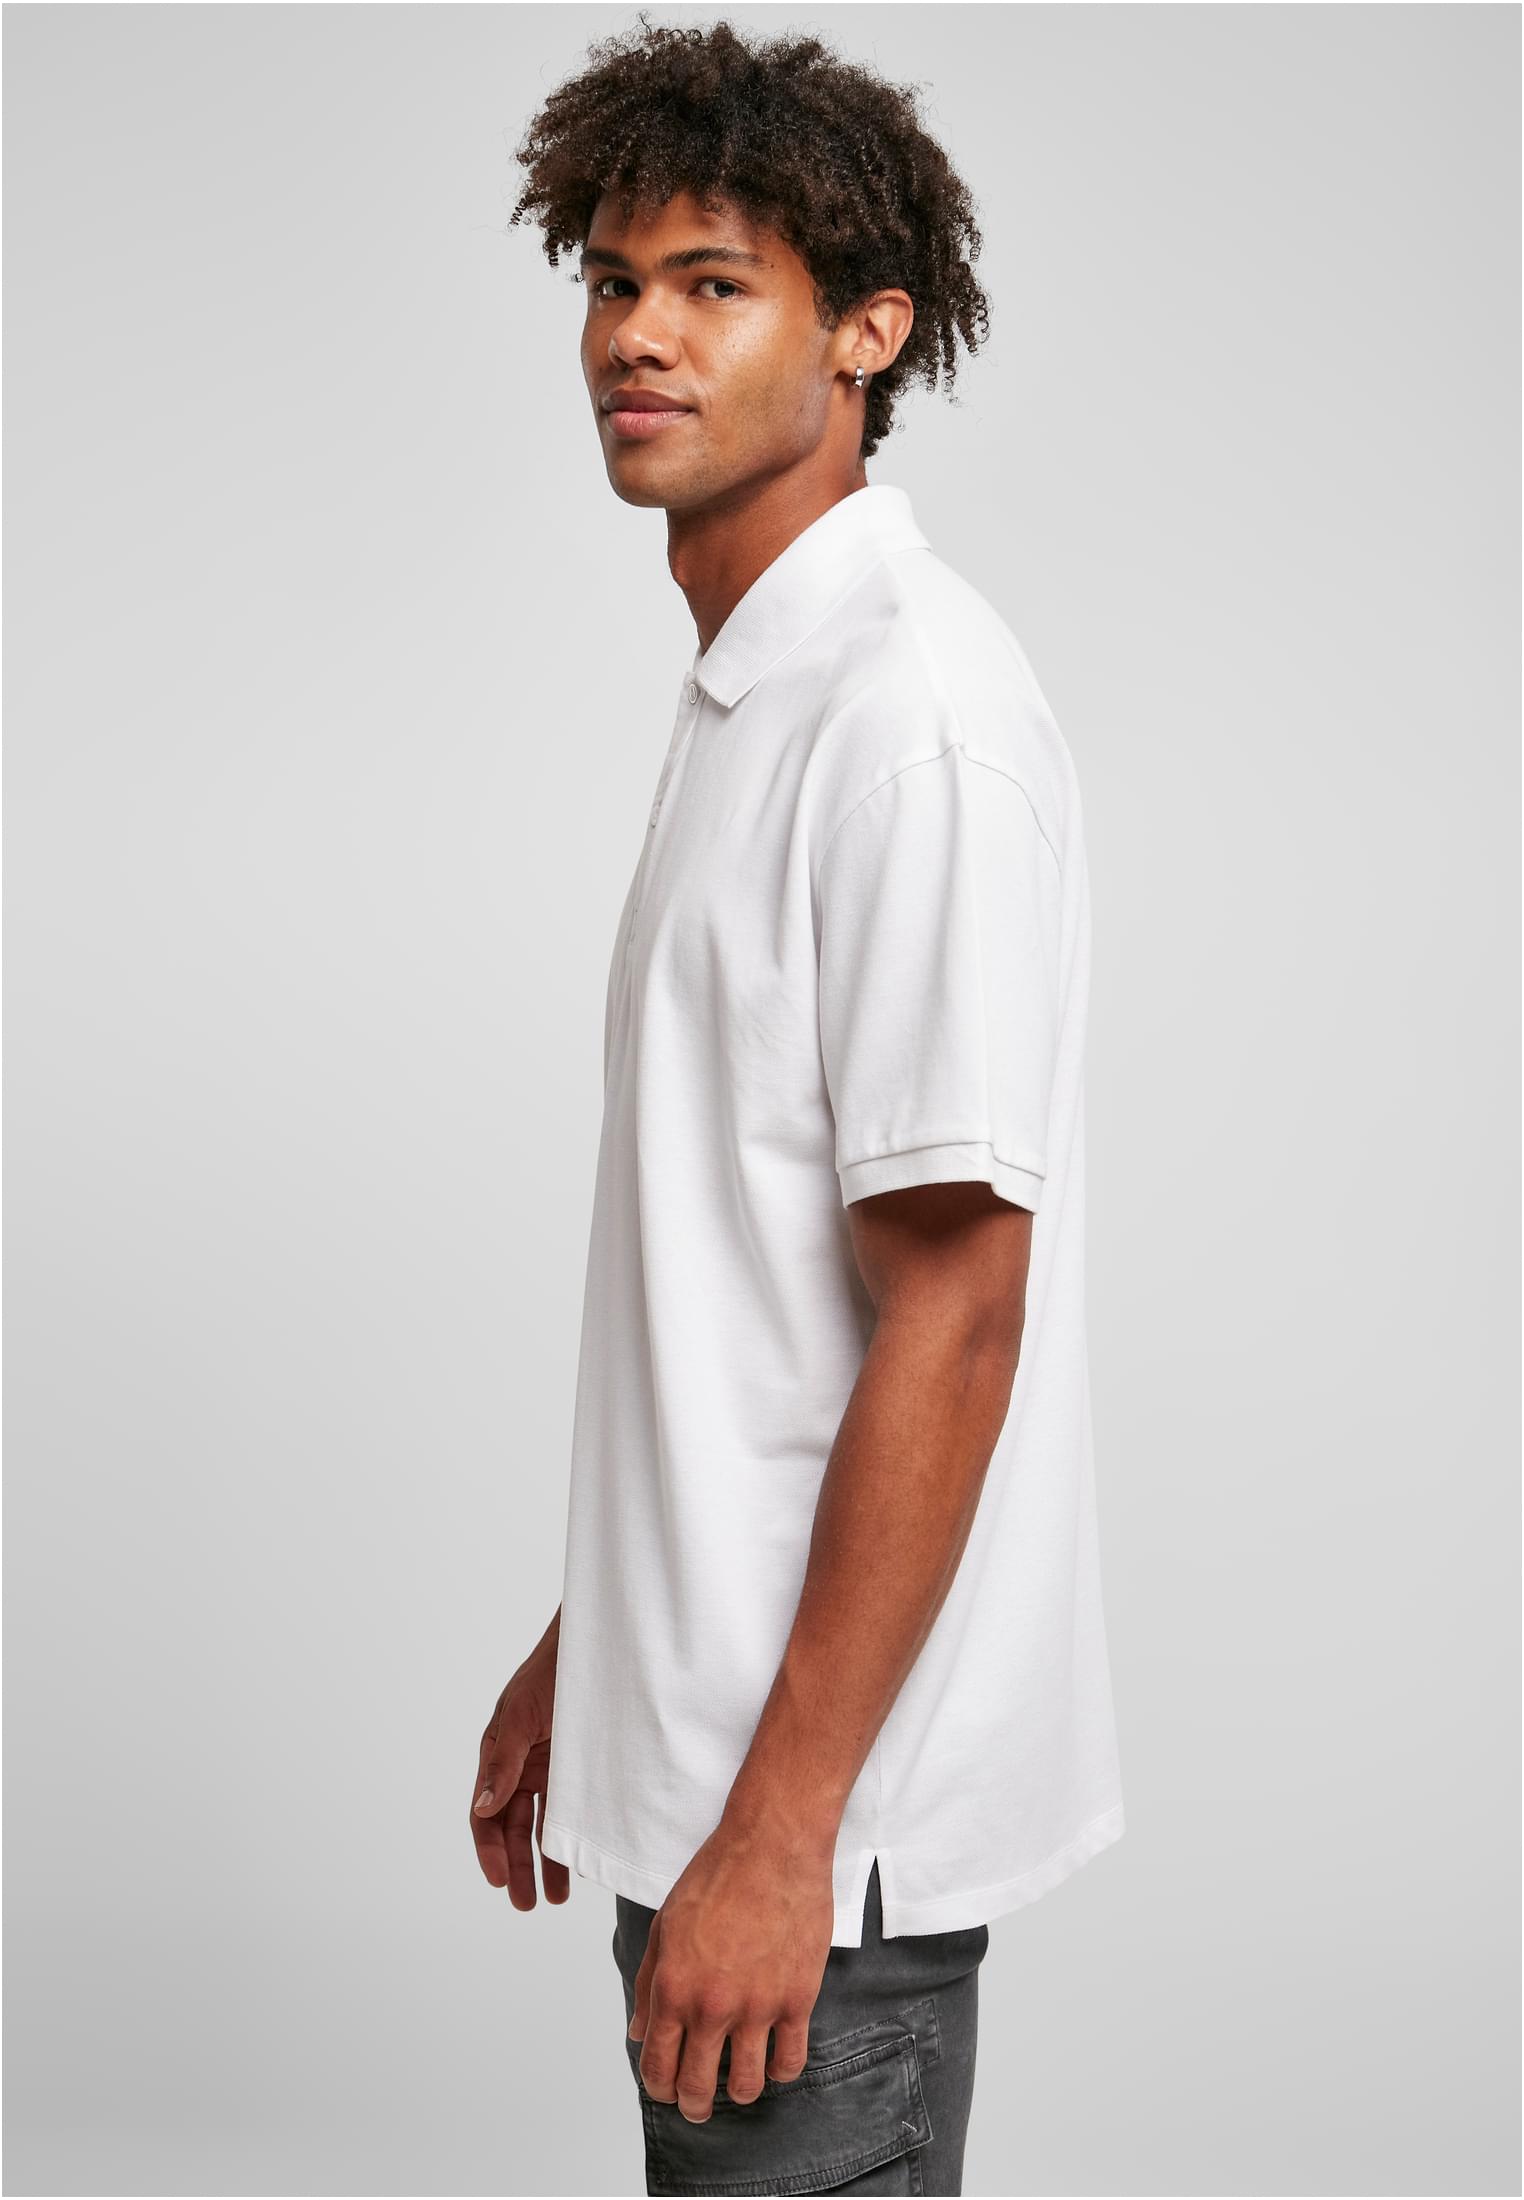 Hemden Oversized Polo in Farbe white